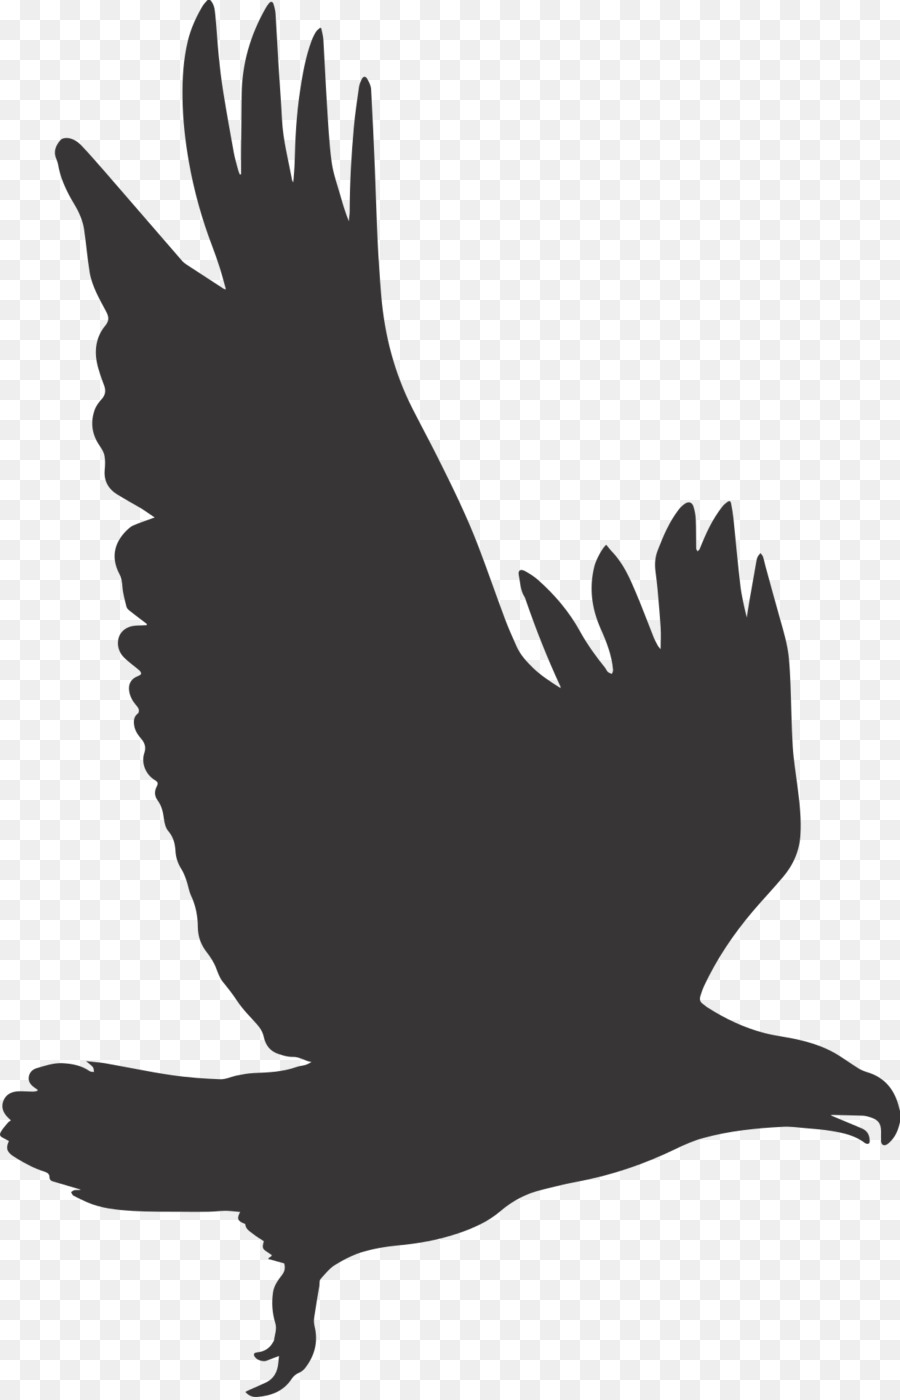 Vector graphics Clip art Bald eagle Illustration - eagle png download - 1237*1920 - Free Transparent Eagle png Download.